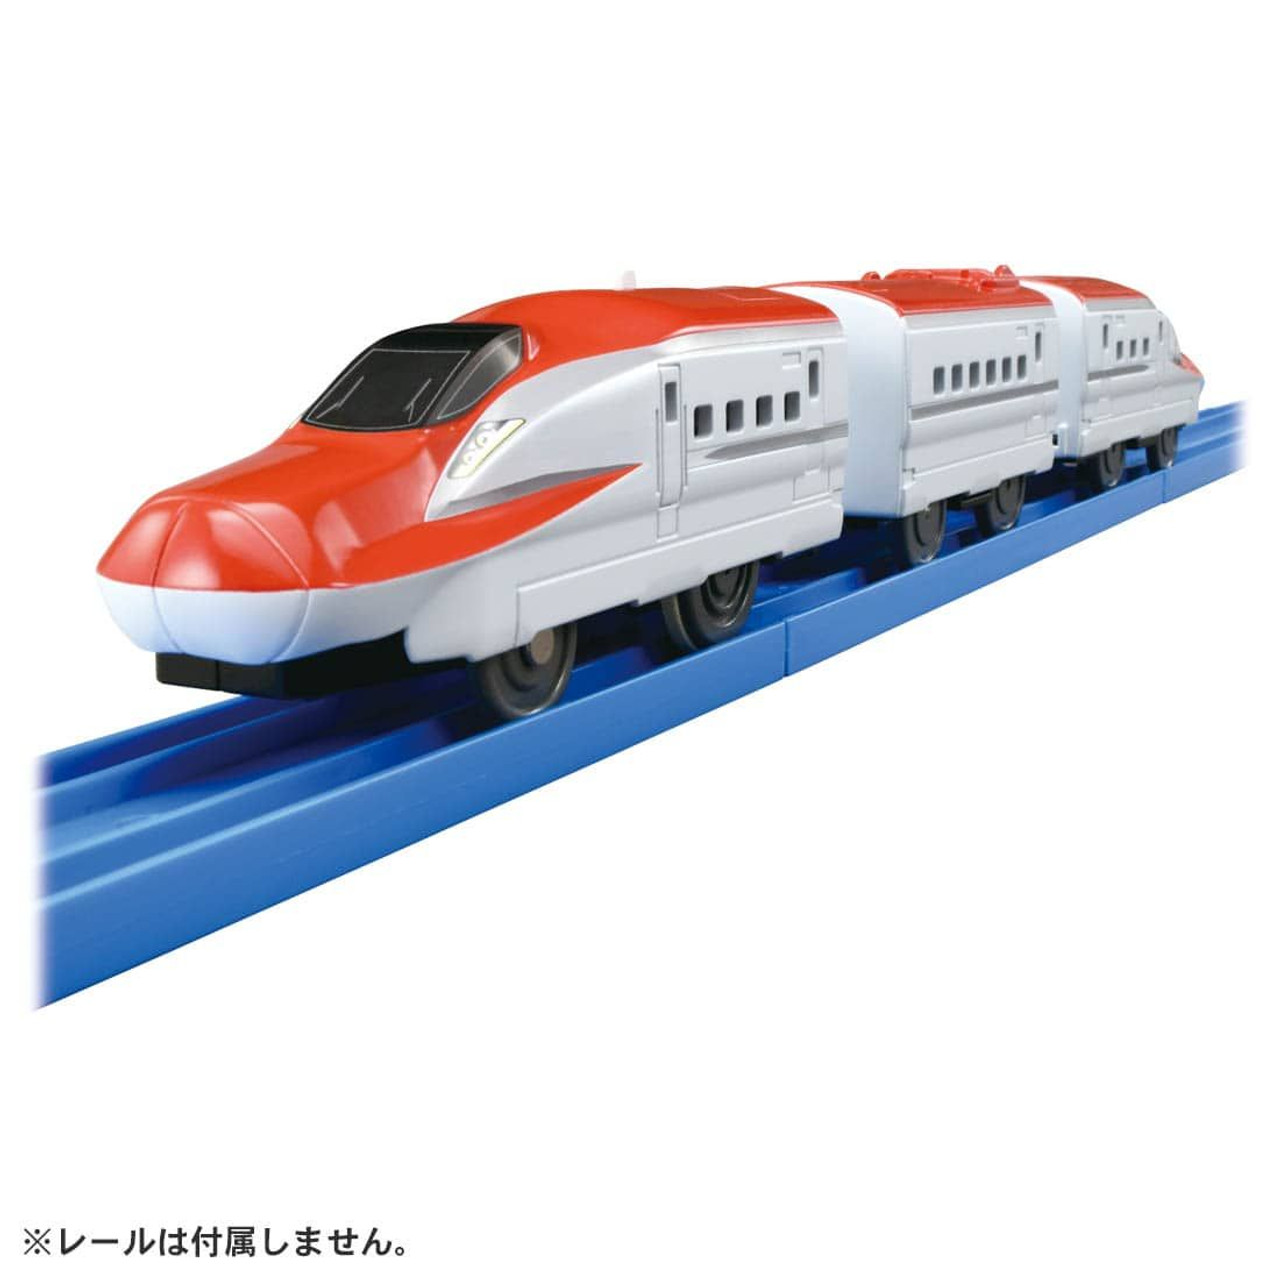 Mô hình tàu điện Takara Tomy ES-03 E6 Shinkansen Komachi